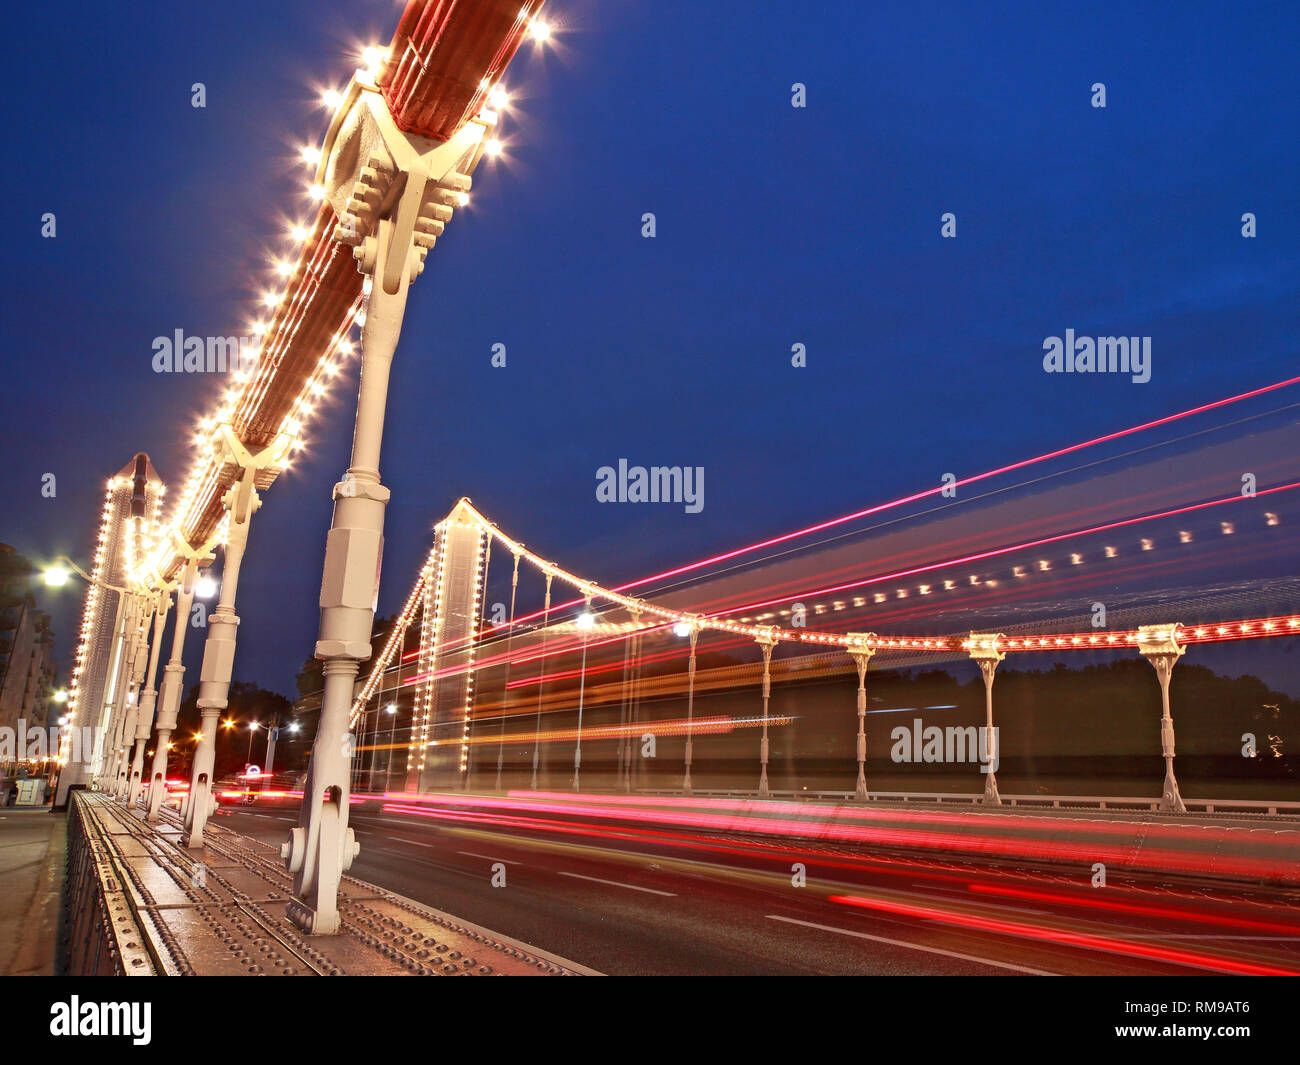 Crépuscule à Chelsea Bridge sur la Tamise, Chelsea Bridge Rd, London SW3 4SL Banque D'Images